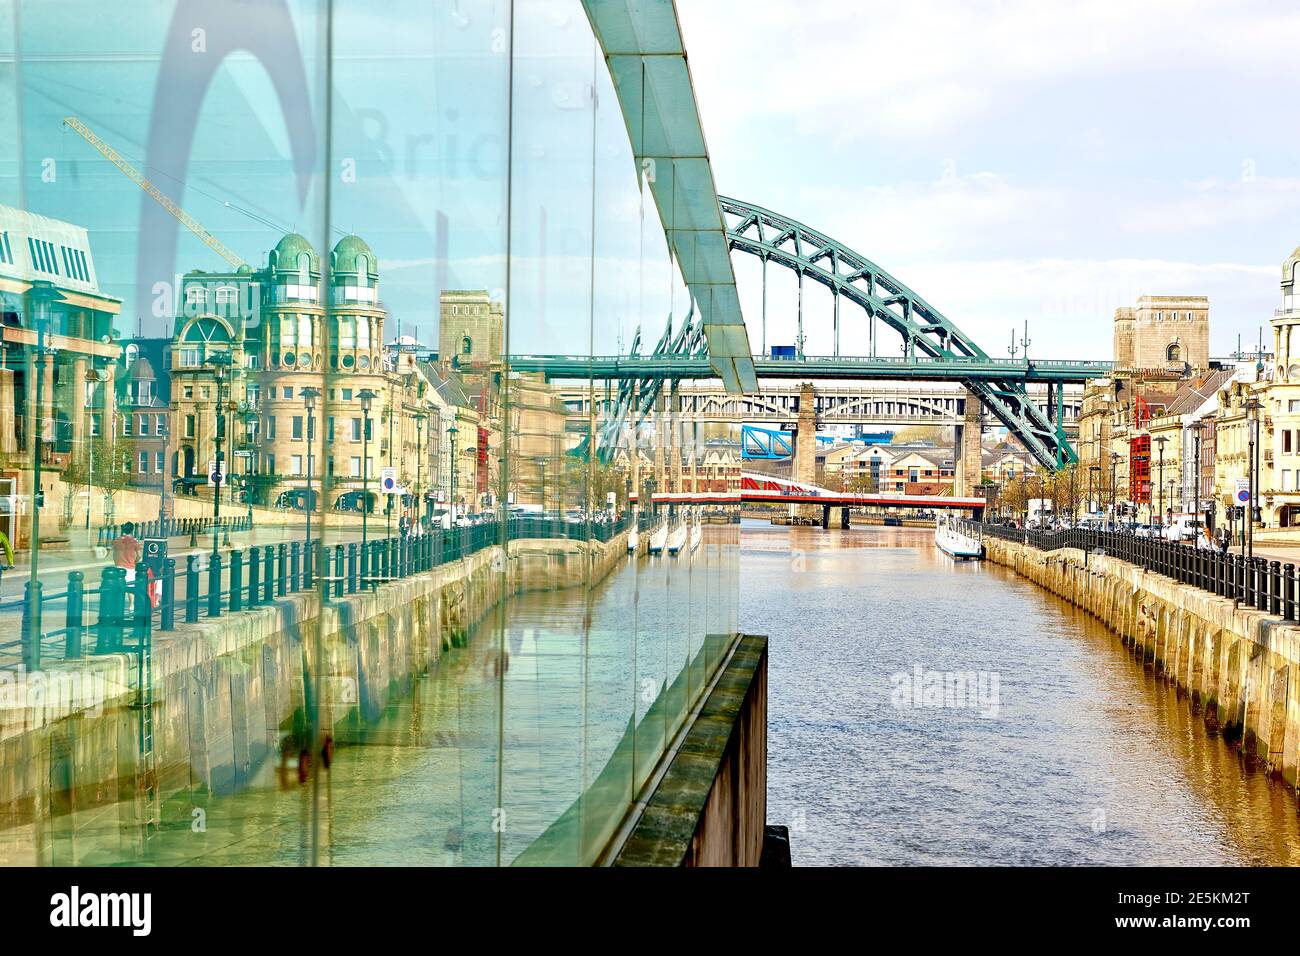 The iconic Tyne Bridge in Newcastle Upon Tyne, Tyneside, North East England, UK Stock Photo